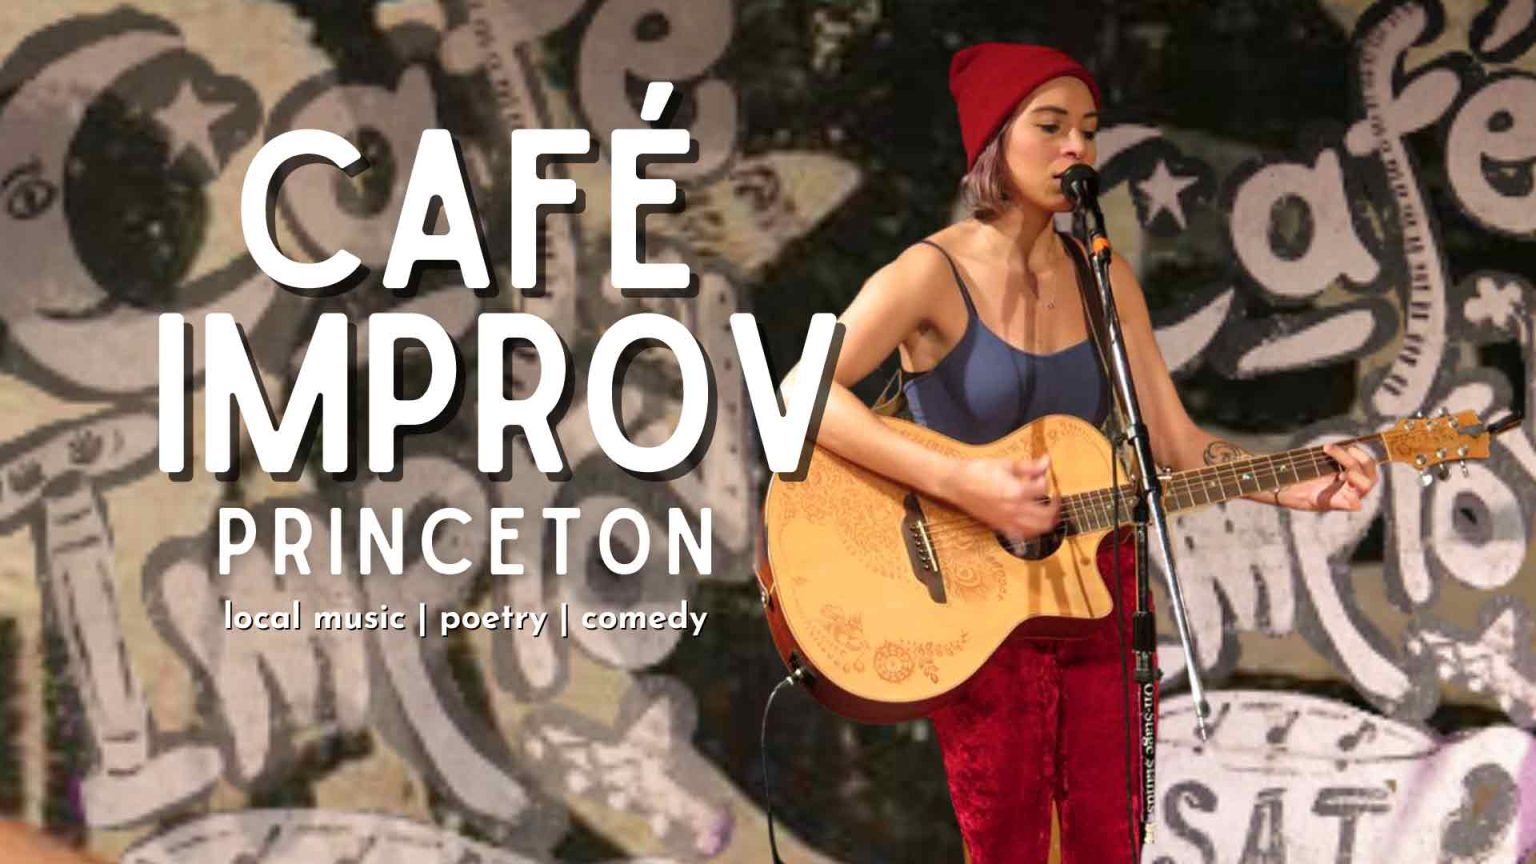 Cafe Improv